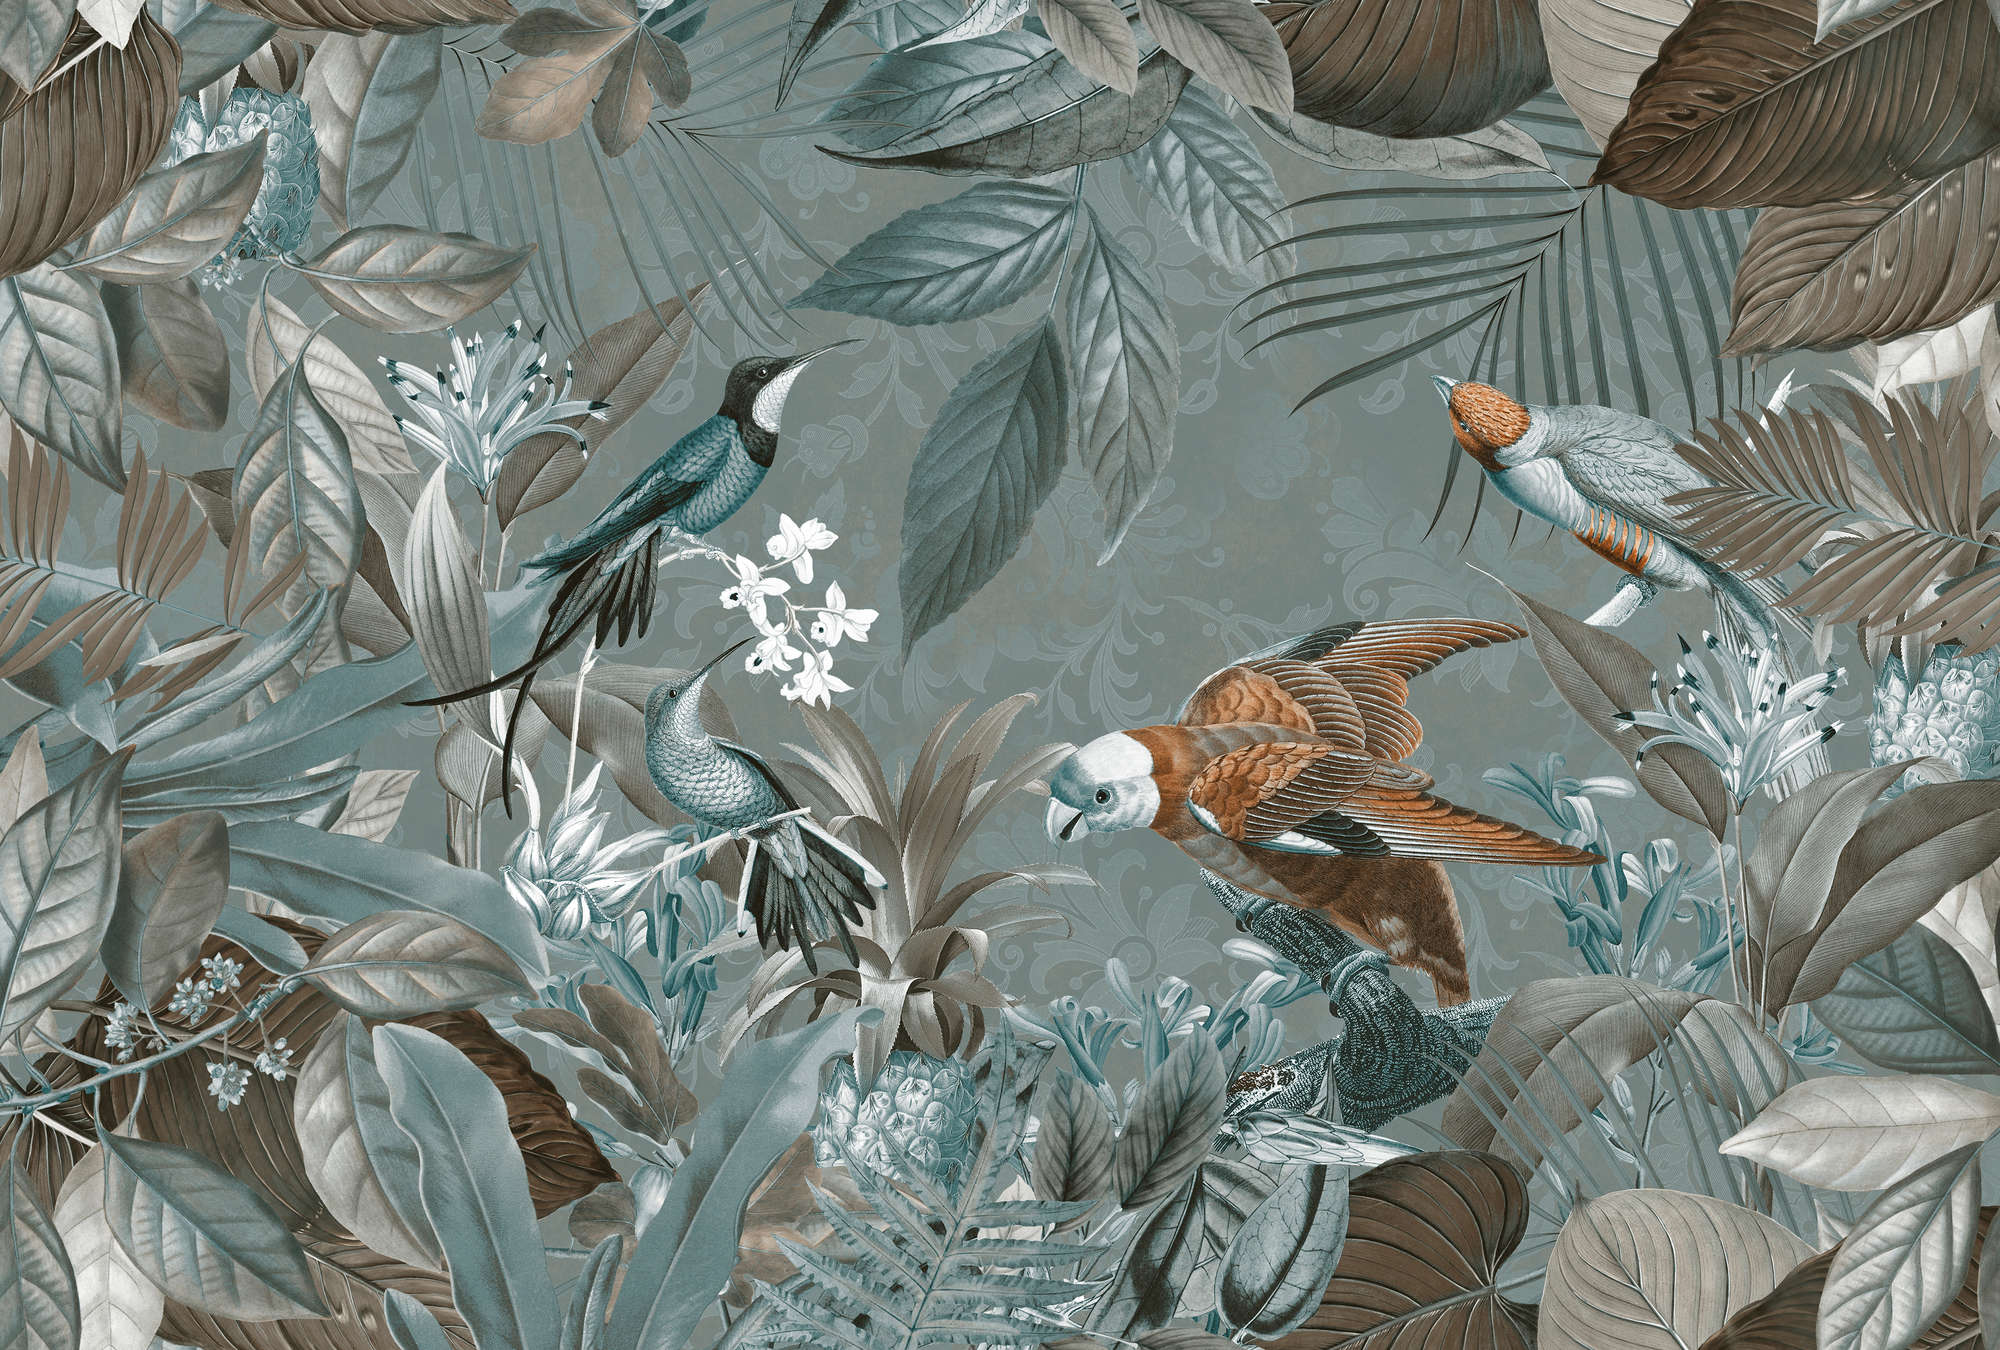             Jungle Behang Vogels & Tropisch Ontwerp
        